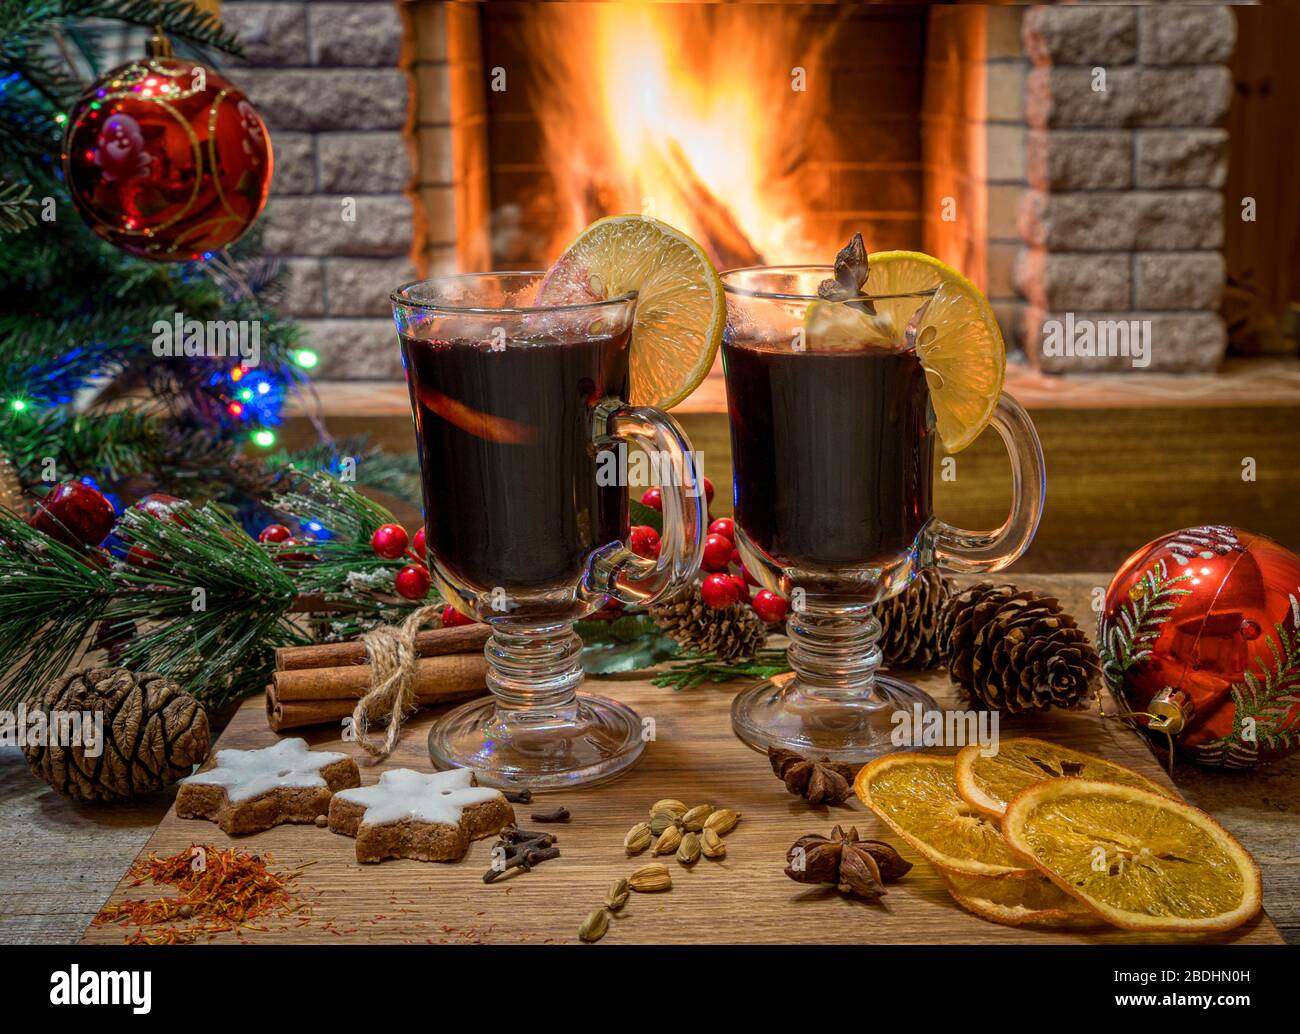 Gemütliche Weihnachts-Szene mit zwei Gläsern Glühwein auf einem Holzbrett vor Weihnachtsbaum dekorierte Spielzeuge und weihnachtslichter gegenüber dem brennenden Feuer Stockfoto